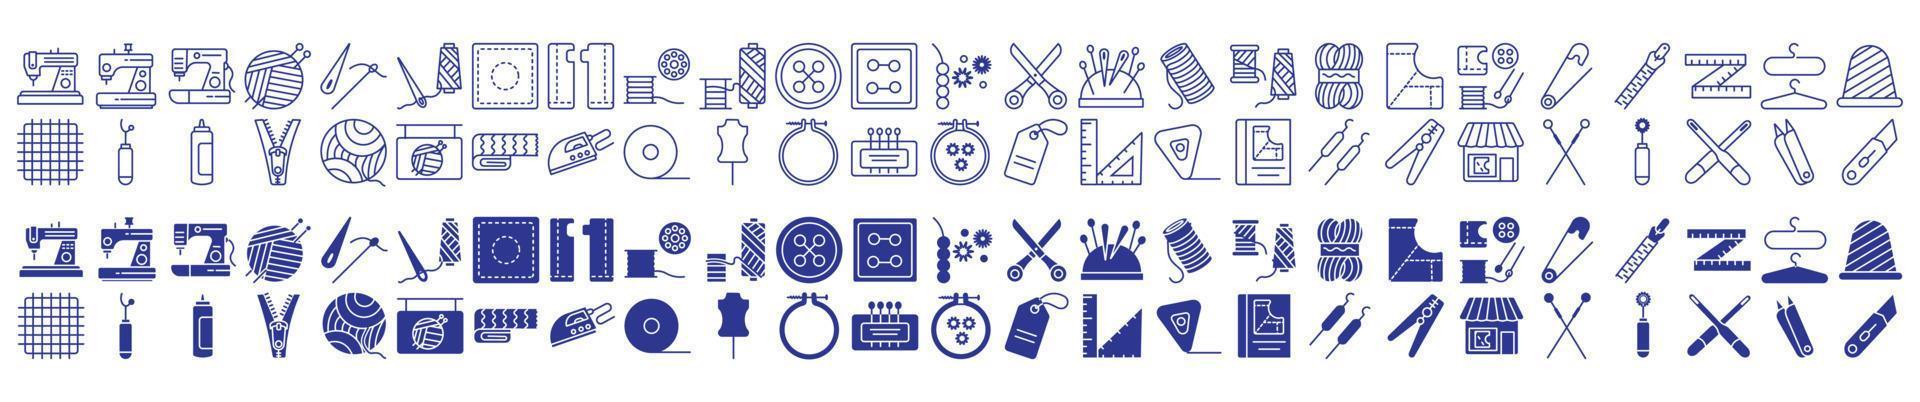 Sammlung von Symbolen zum Nähen und Nähen, einschließlich Symbolen wie Nähmaschine, Nadel, Stiche, Faden und mehr. Vektorgrafiken, pixelgenau vektor